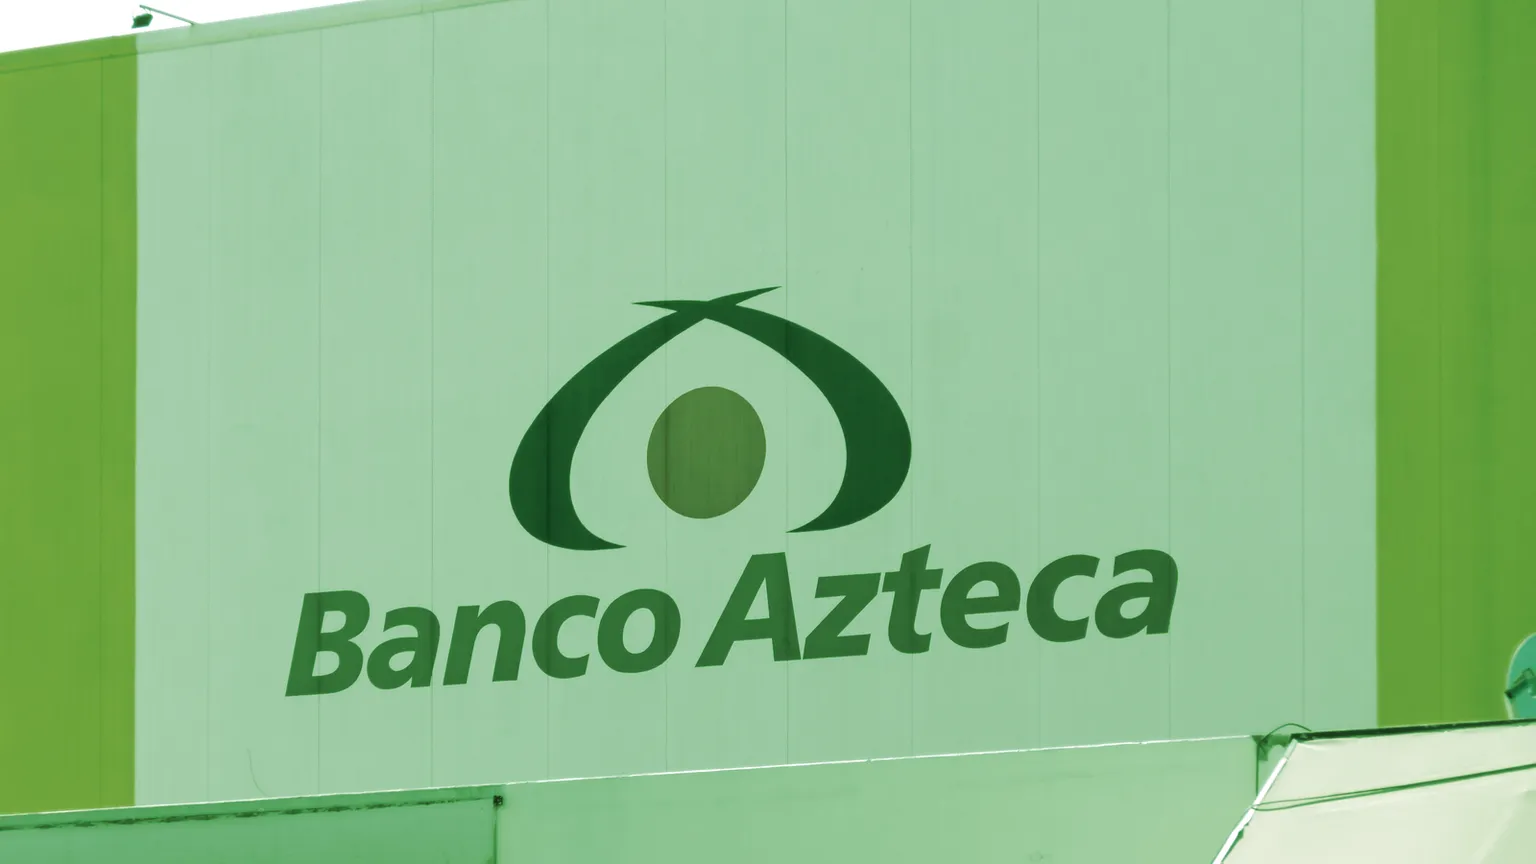 Publicidad de "Banco Azteca" en Guadalajara Jalisco, Mexico. Imagen: Shutterstock